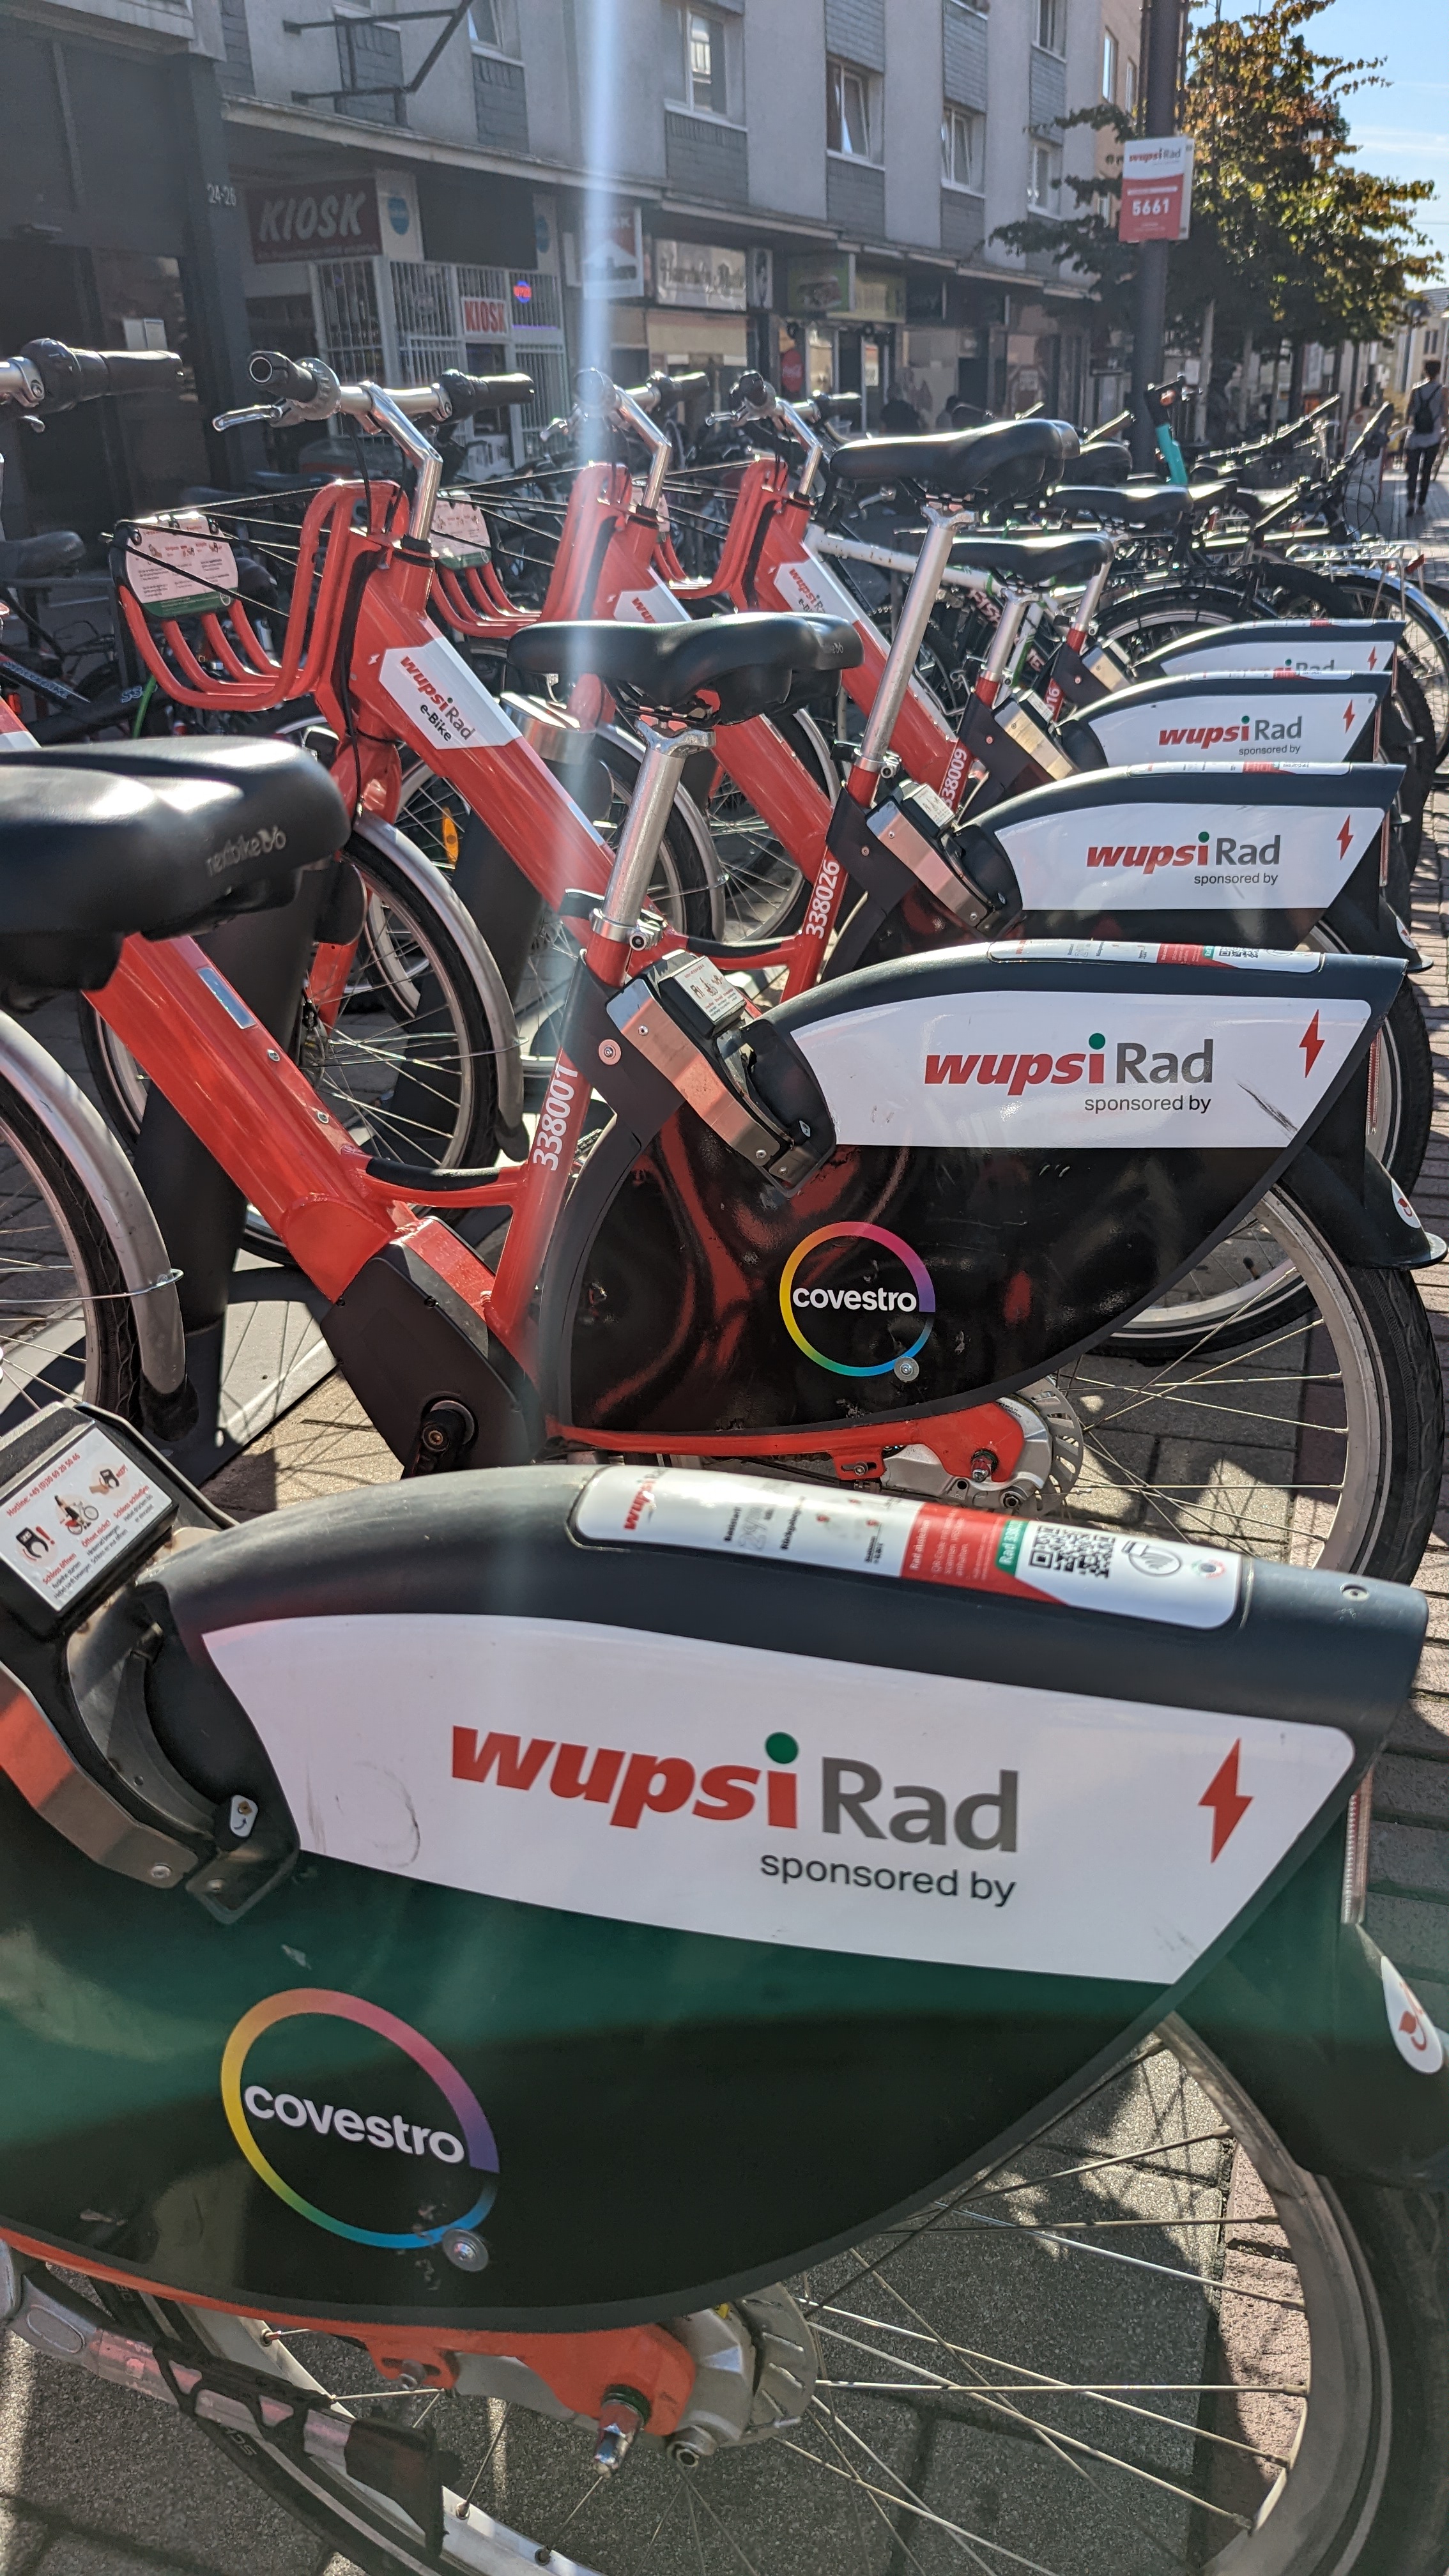 wupsi-Rad-Abstellplatz am Busbahnhof Opladen: viele Fahrräder stehen zur Nutzung bereit.